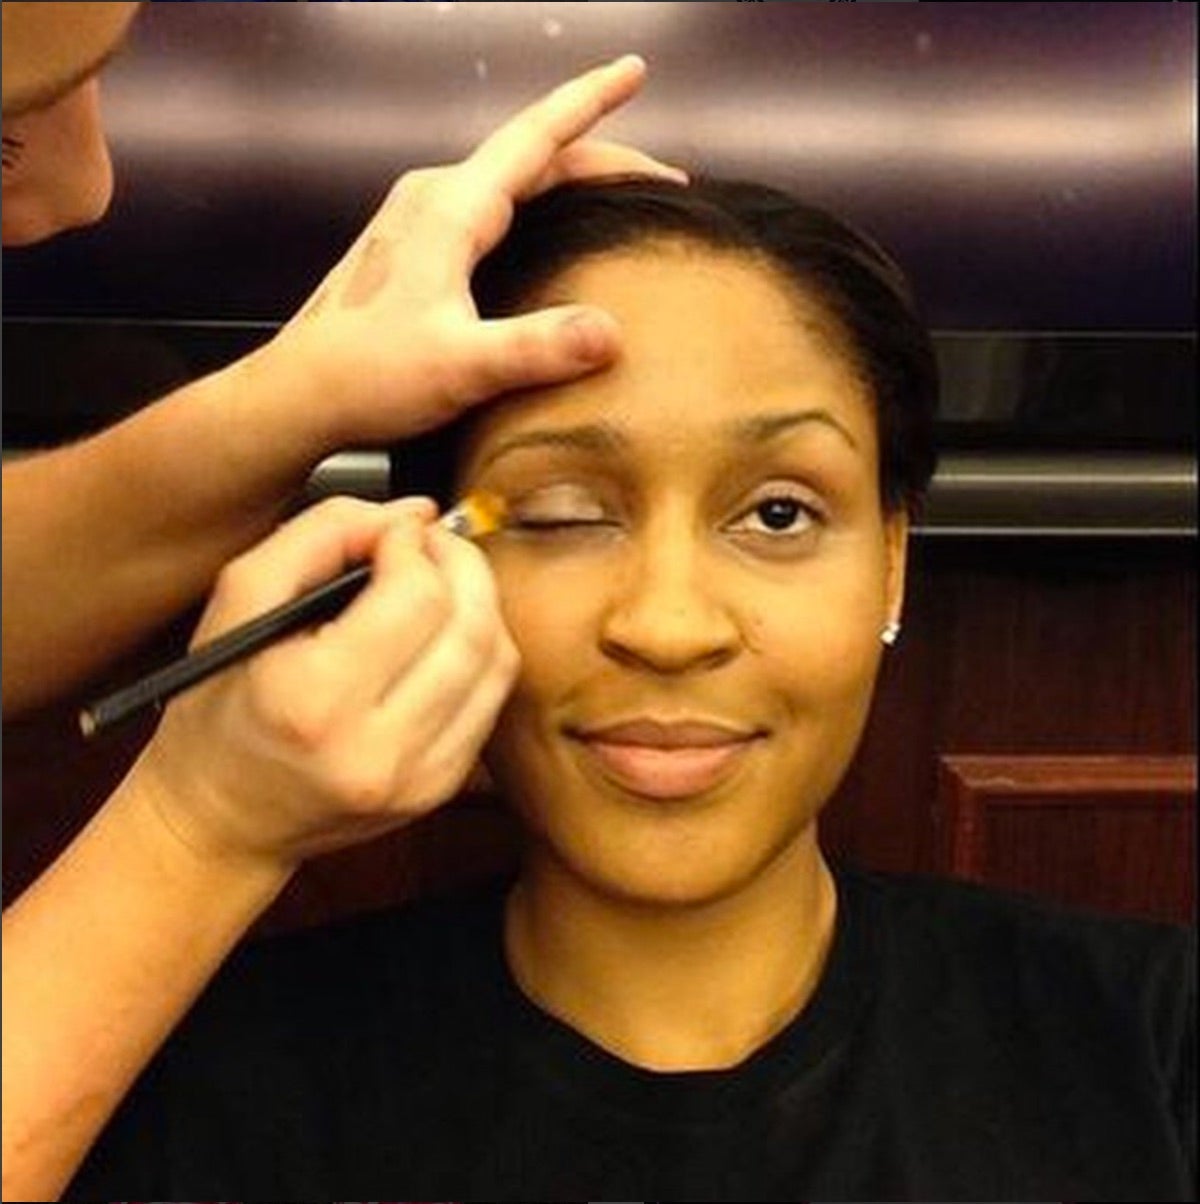 Black Olympian Beauty Moments On Instagram
